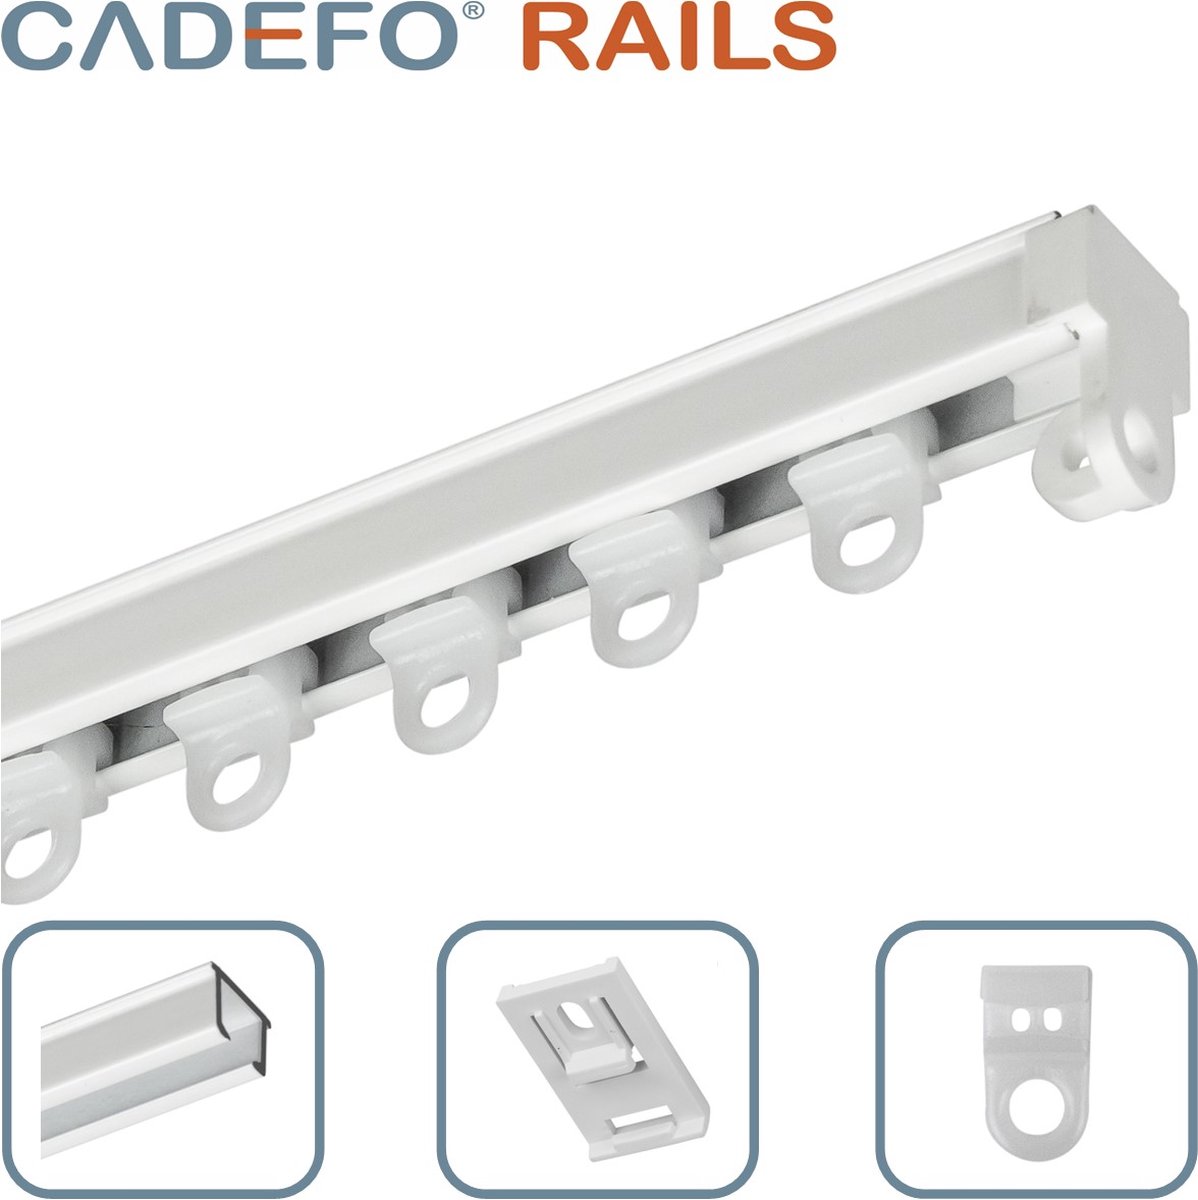 CADEFO RAILS (301 - 350 cm) Gordijnrails - Compleet op maat! - UIT 1 STUK - Leverbaar tot 6 meter - Plafondbevestiging - Lengte 305 cm